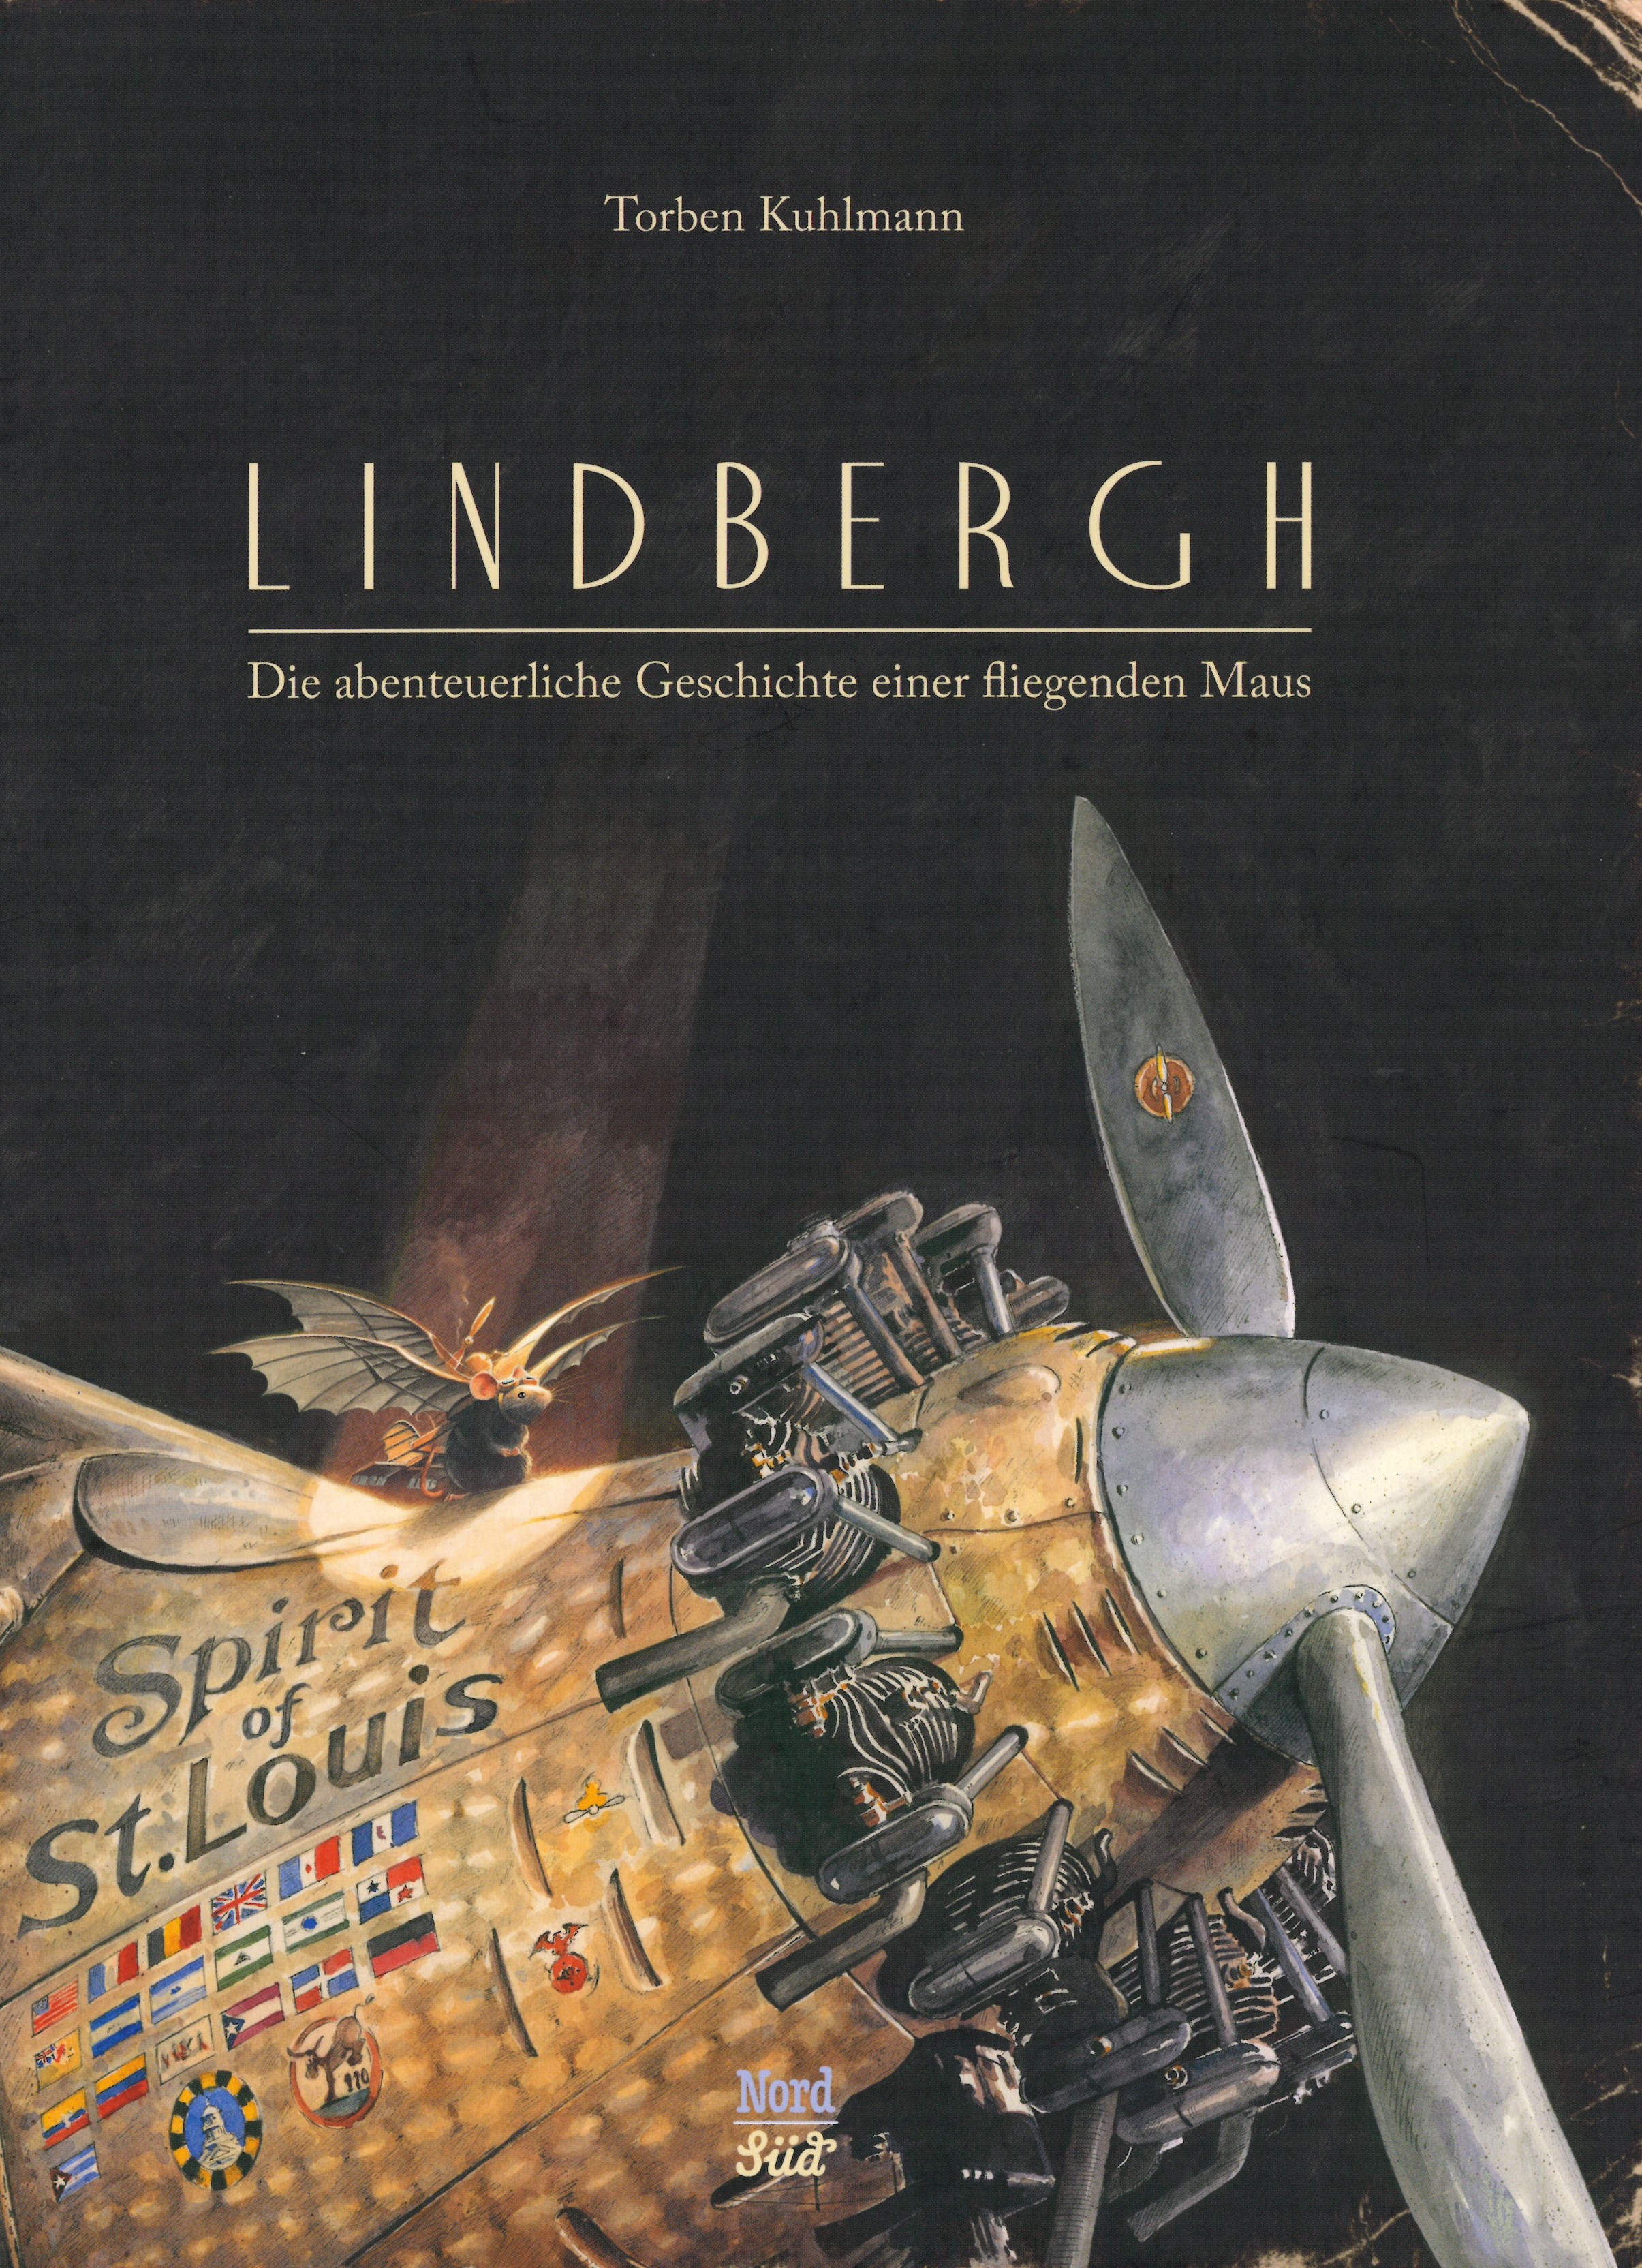 Torben Kuhlmann: Lindbergh. Die abenteureliche Geschichte einer fliegenden Maus